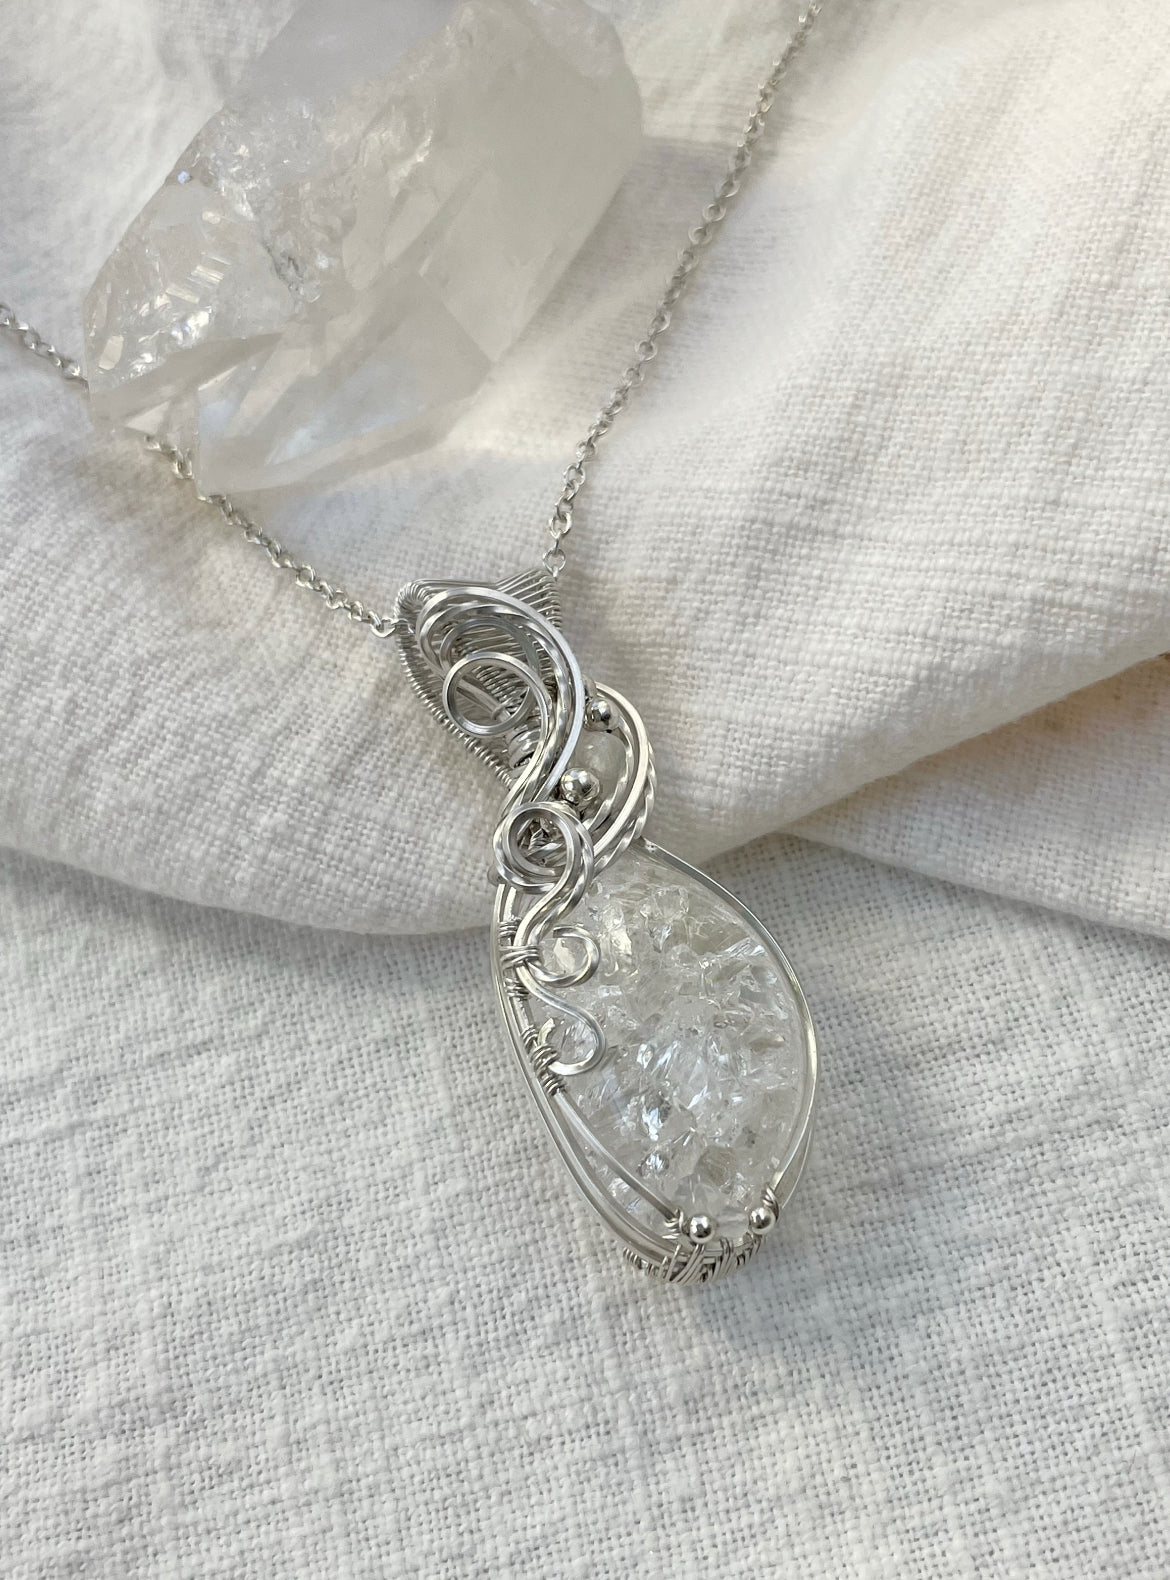 Crackle Quartz, Moonstone Necklace in Argentium Silver